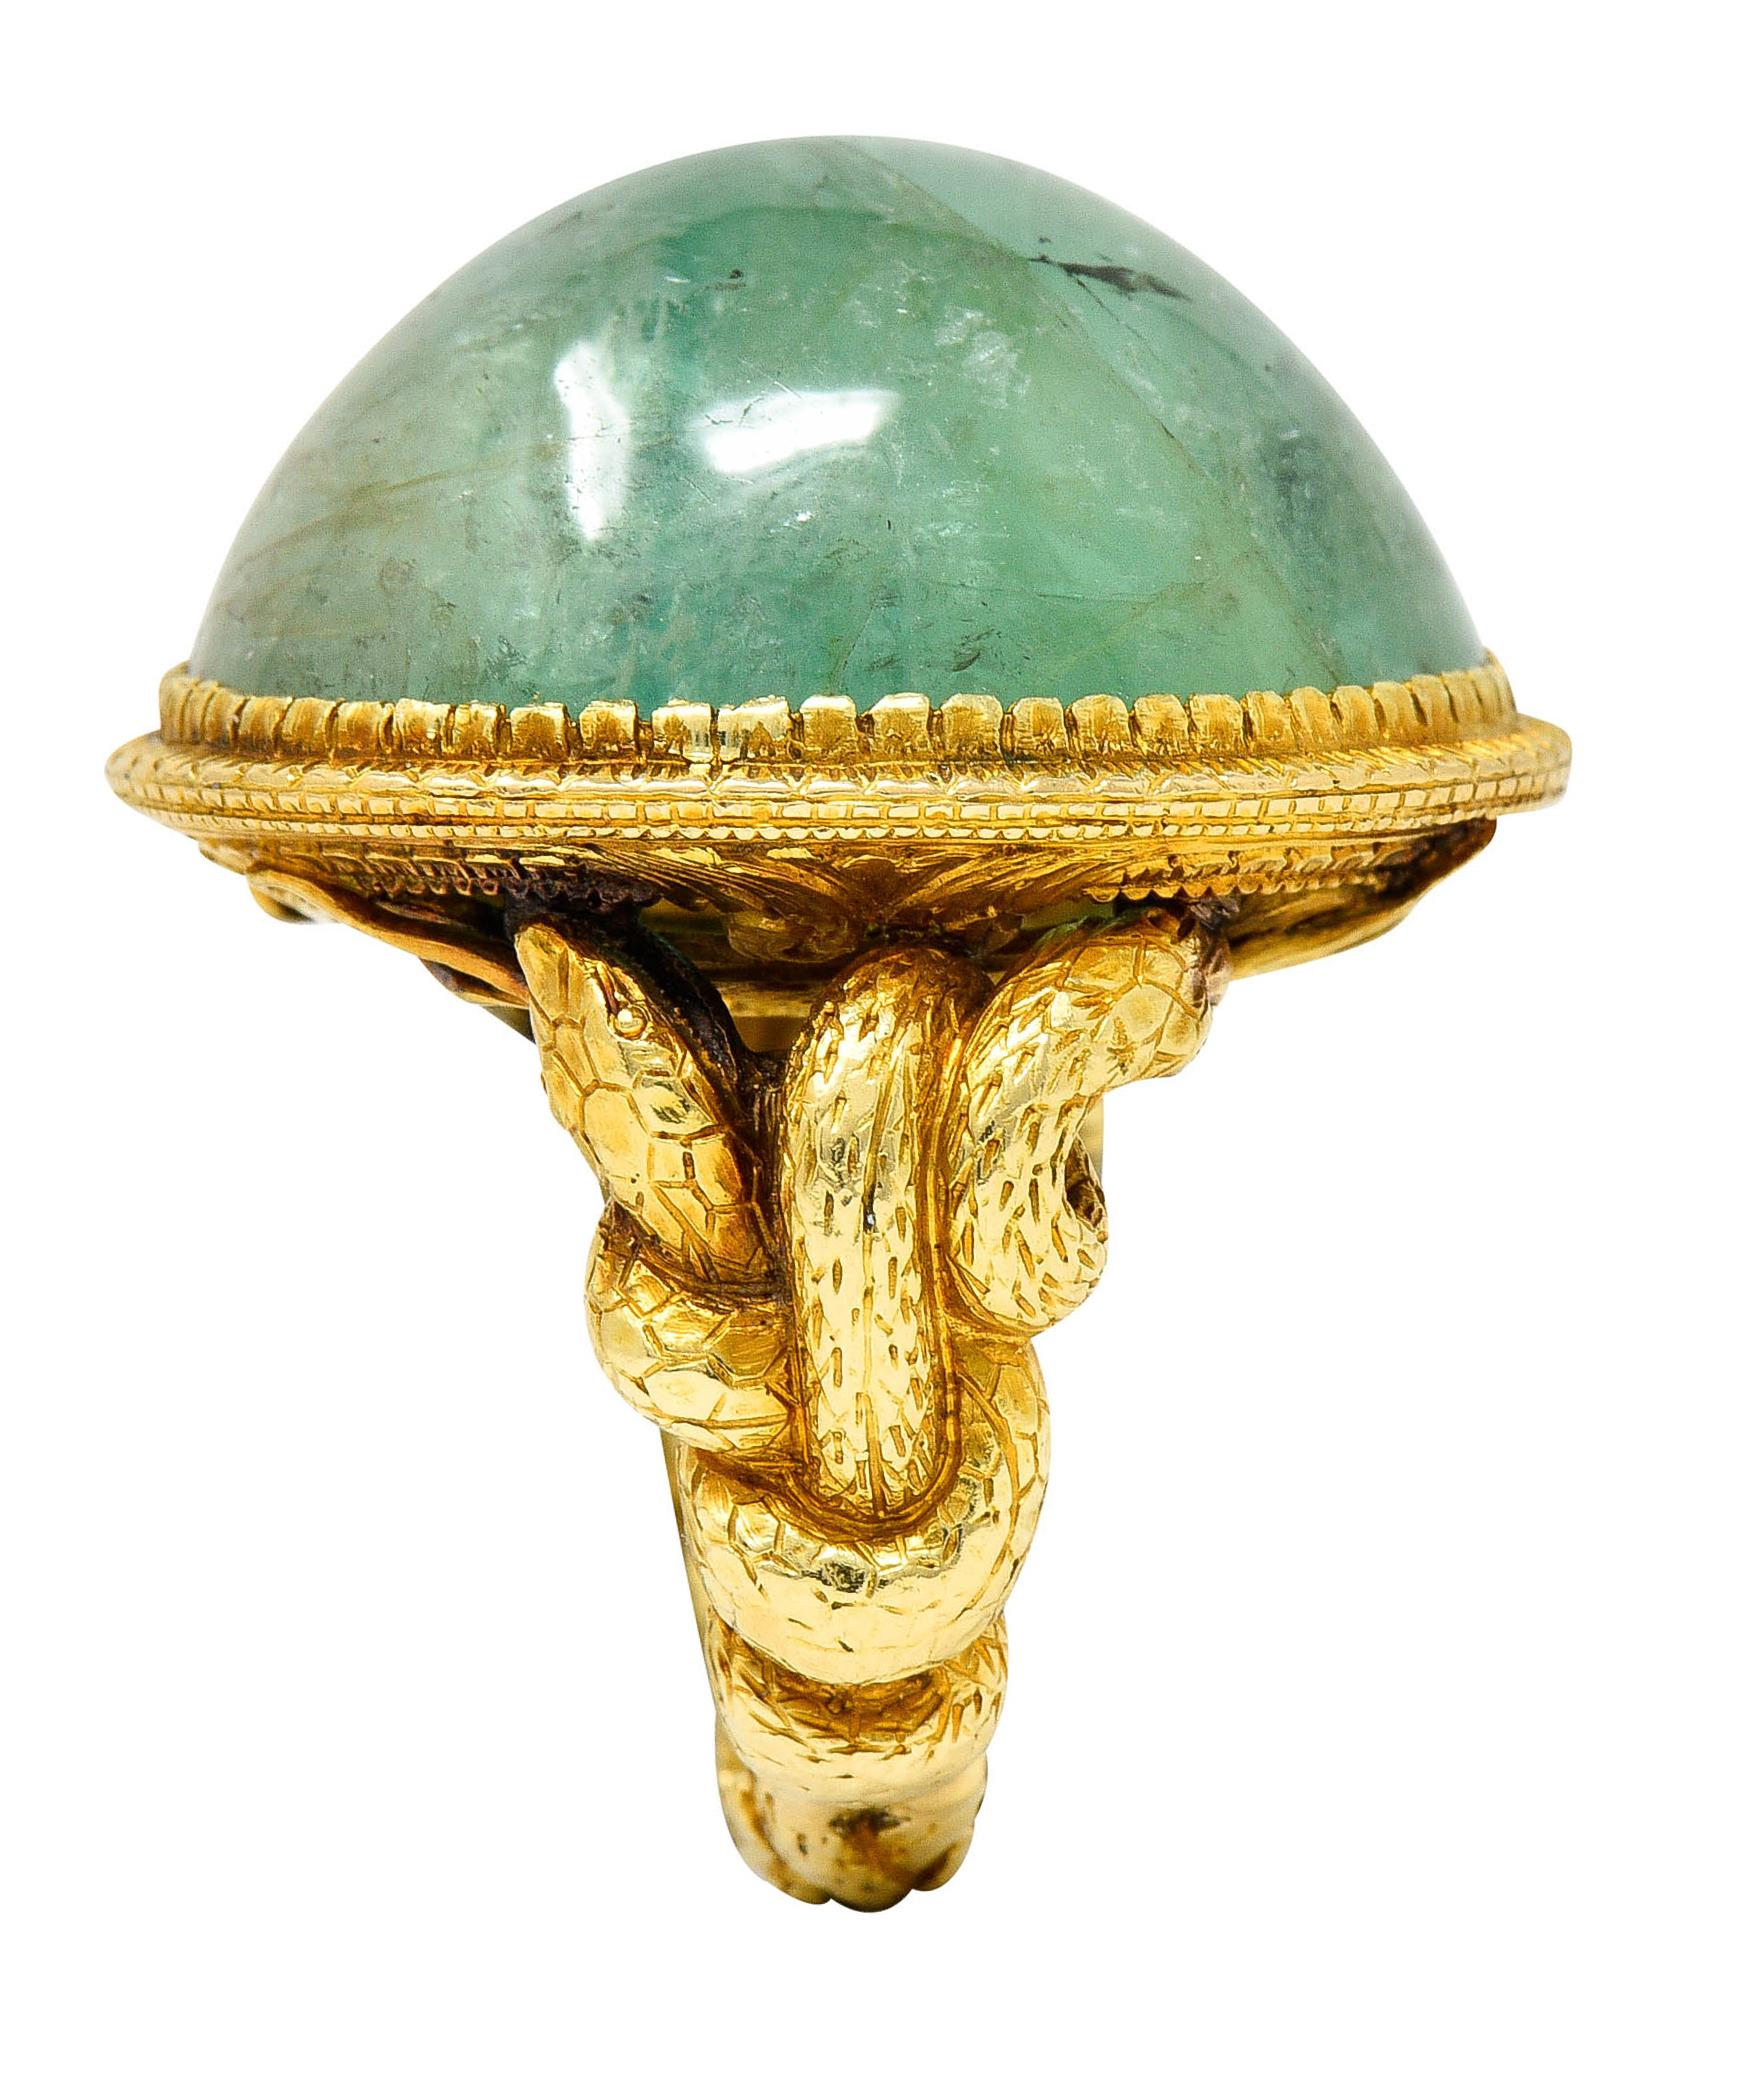 Substantial Emerald 22 Karat Gold Snake Gemstone Ring 5